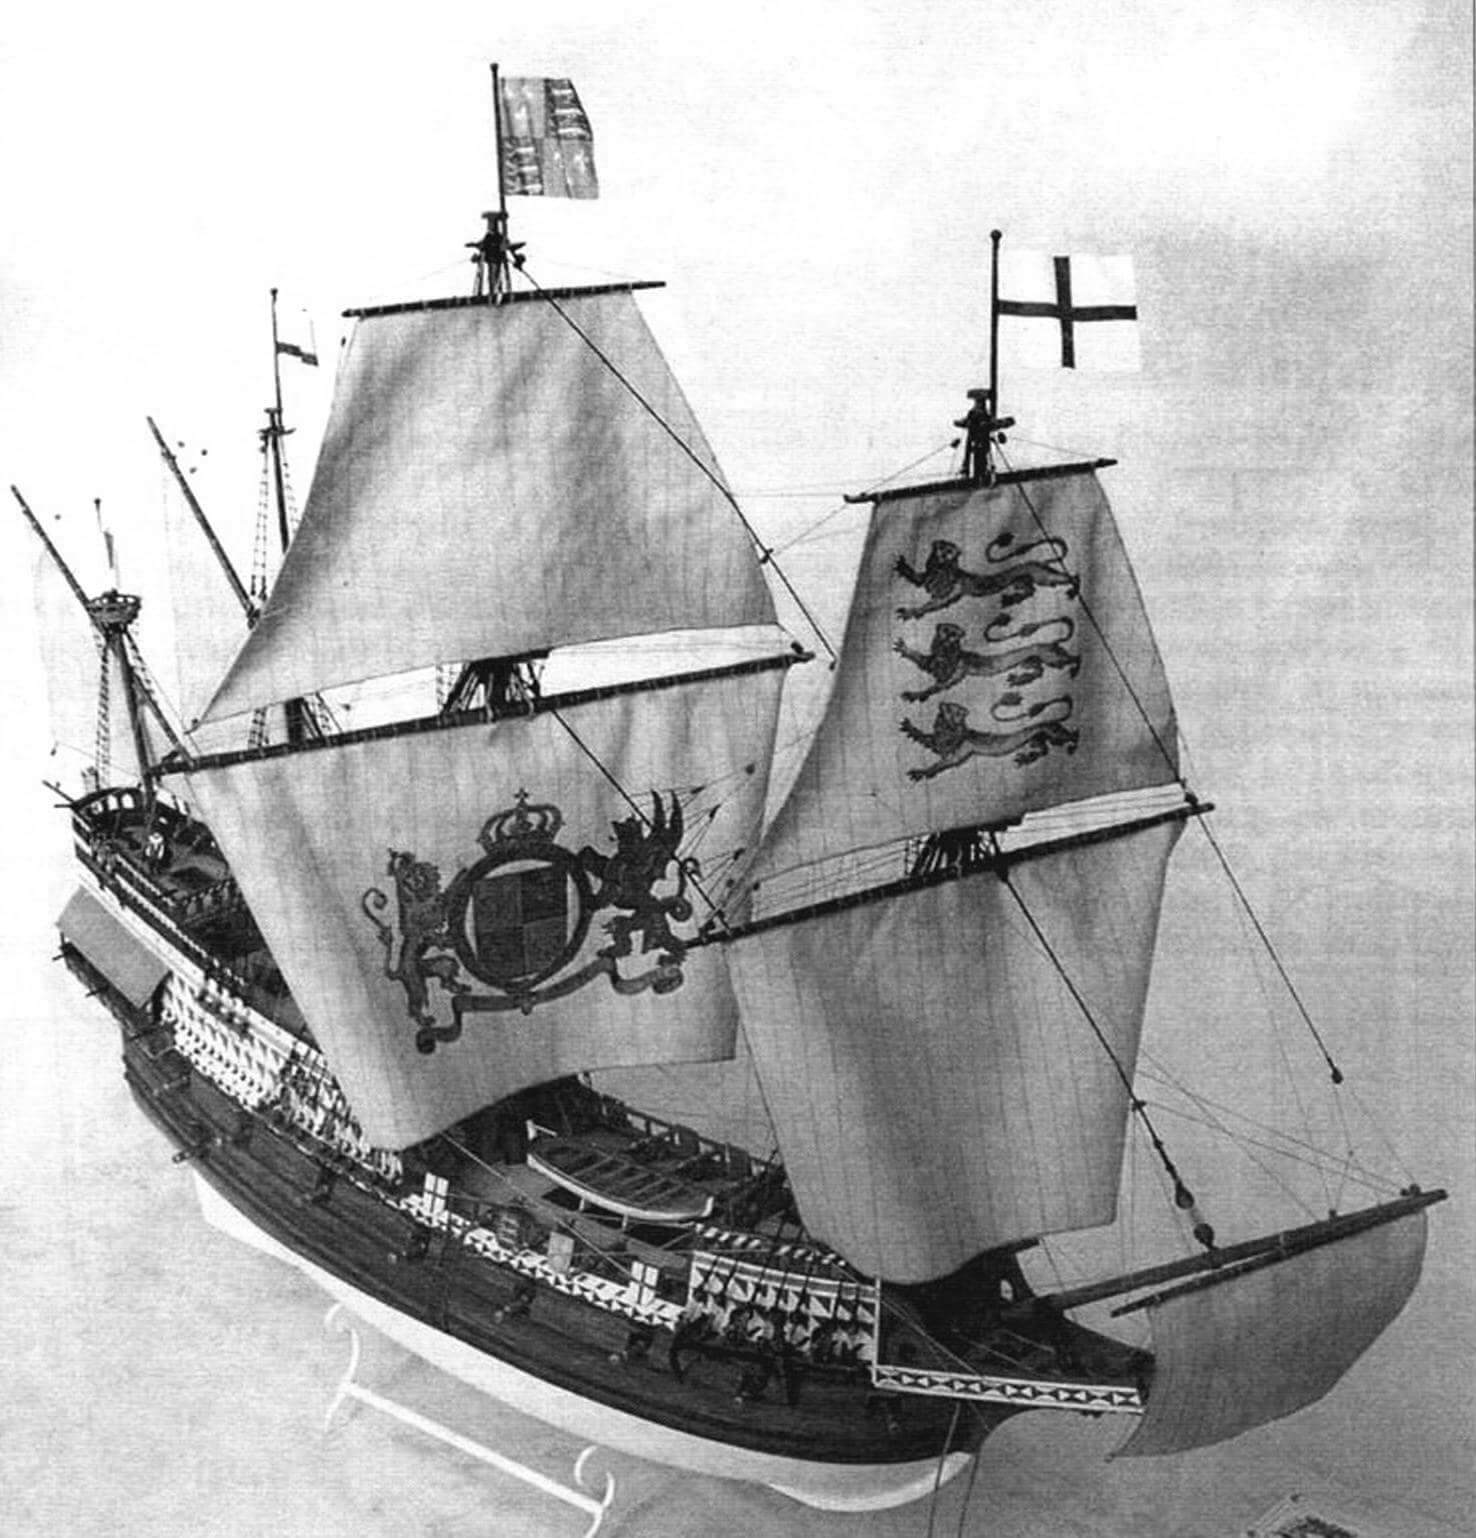 Модель 46-пушечного галеона «Ривендж», флагманского корабля сэра Френсиса Дренка в 1588 году